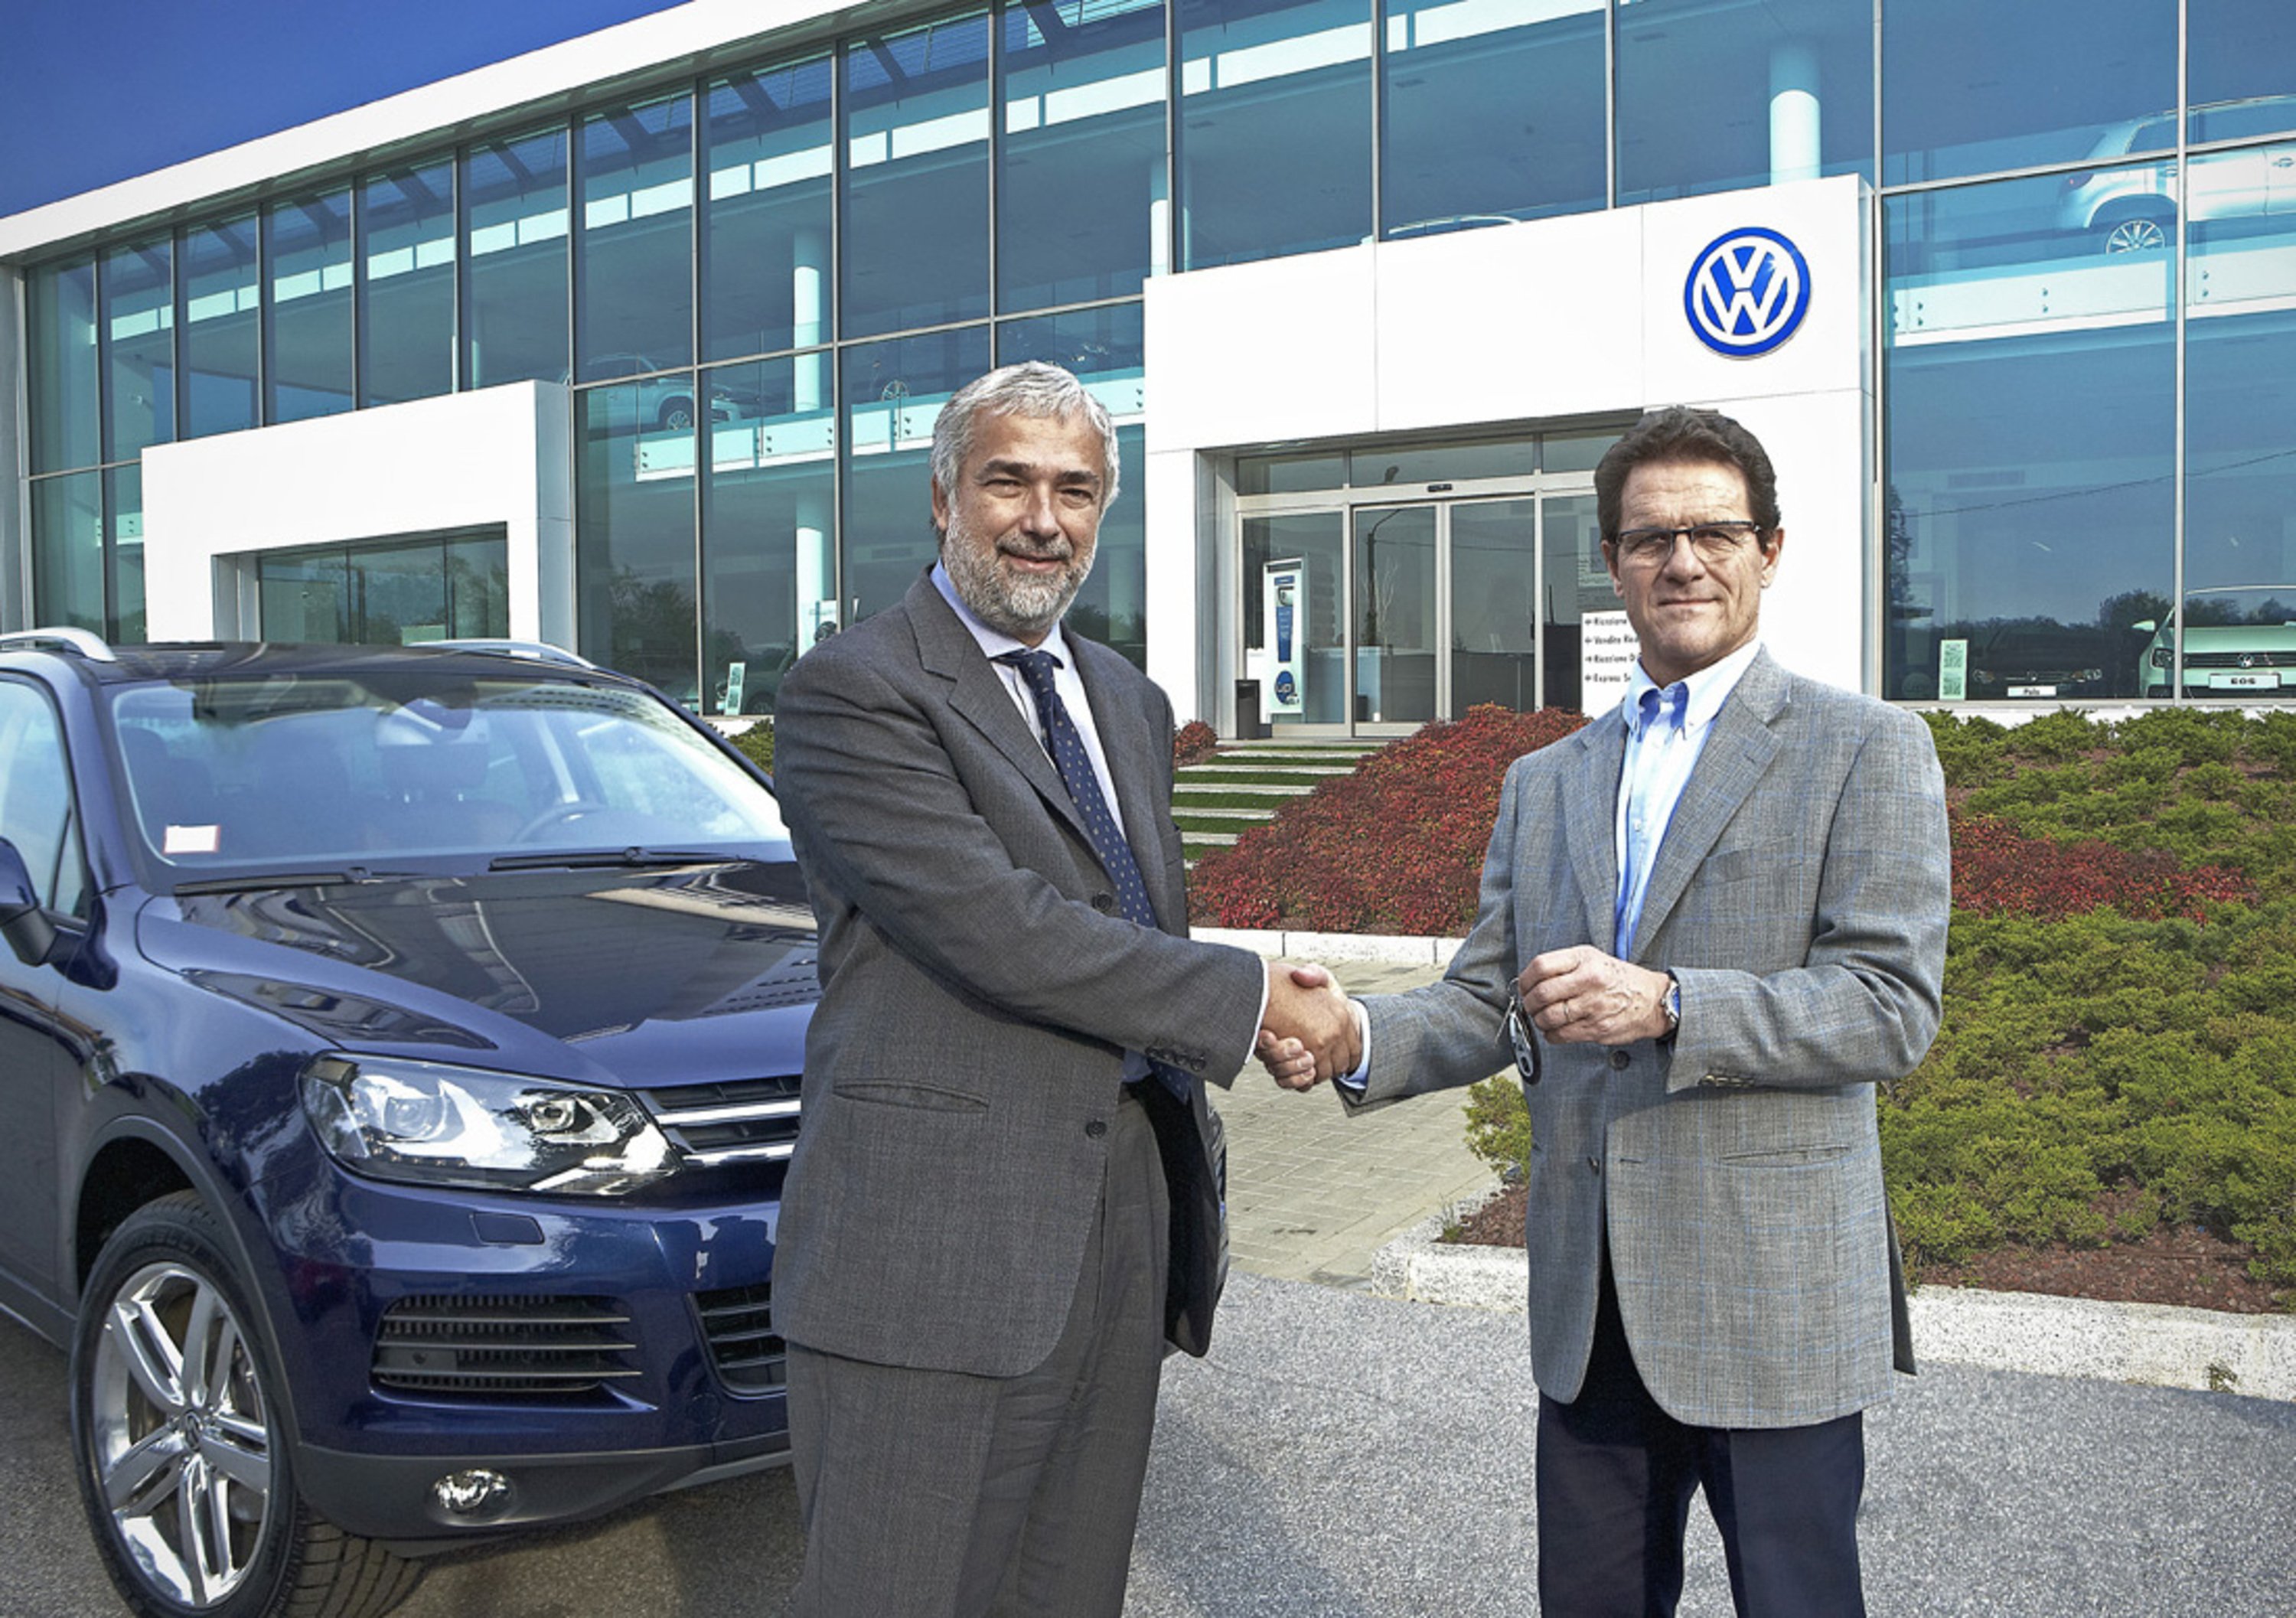 Consegnata una Volkswagen Touareg a Fabio Capello